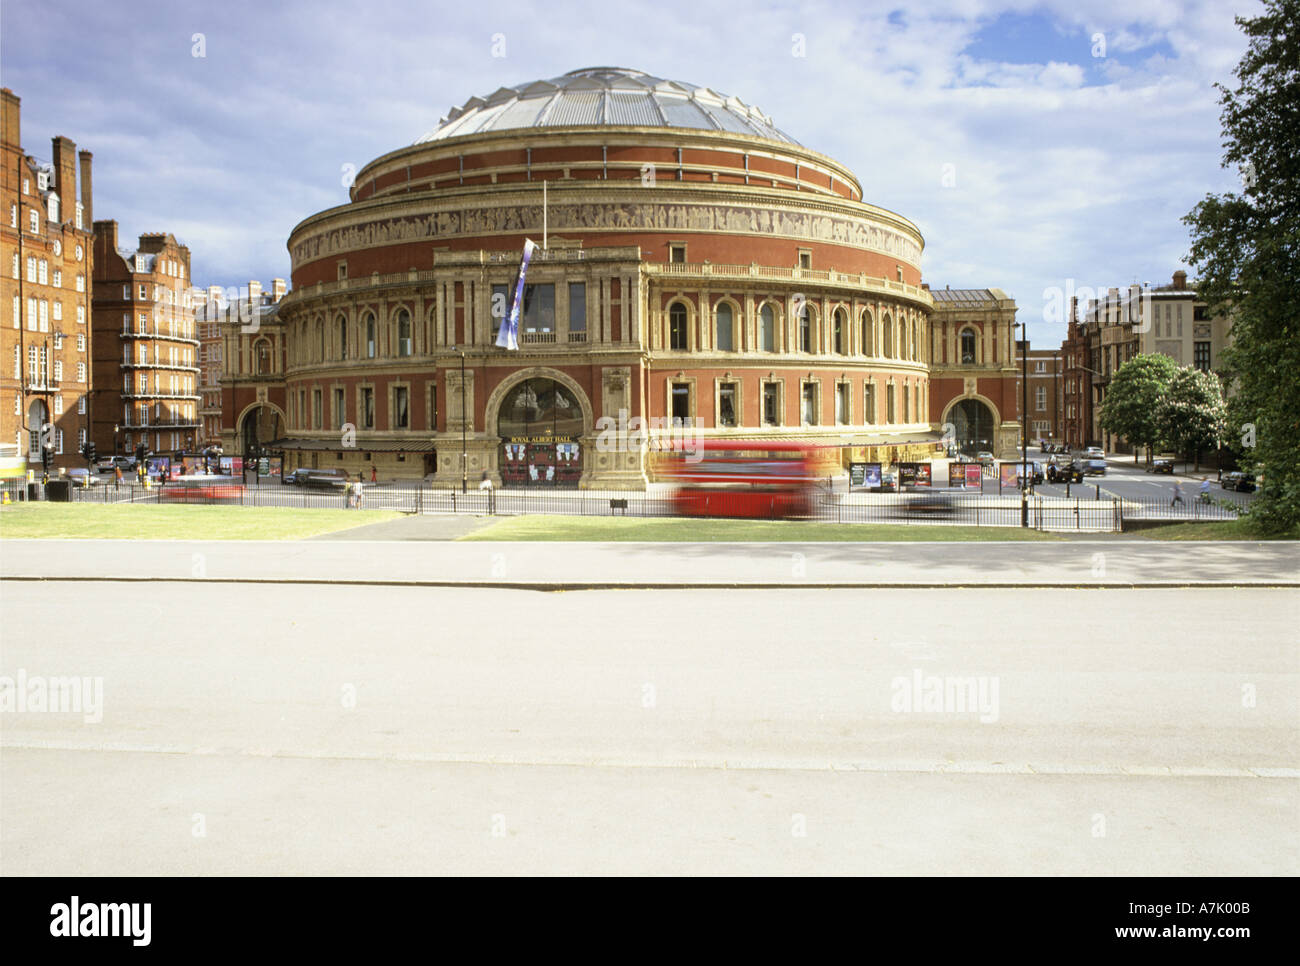 Royal Albert Hall avec red bus passant devant Londres Angleterre Royaume-Uni Banque D'Images